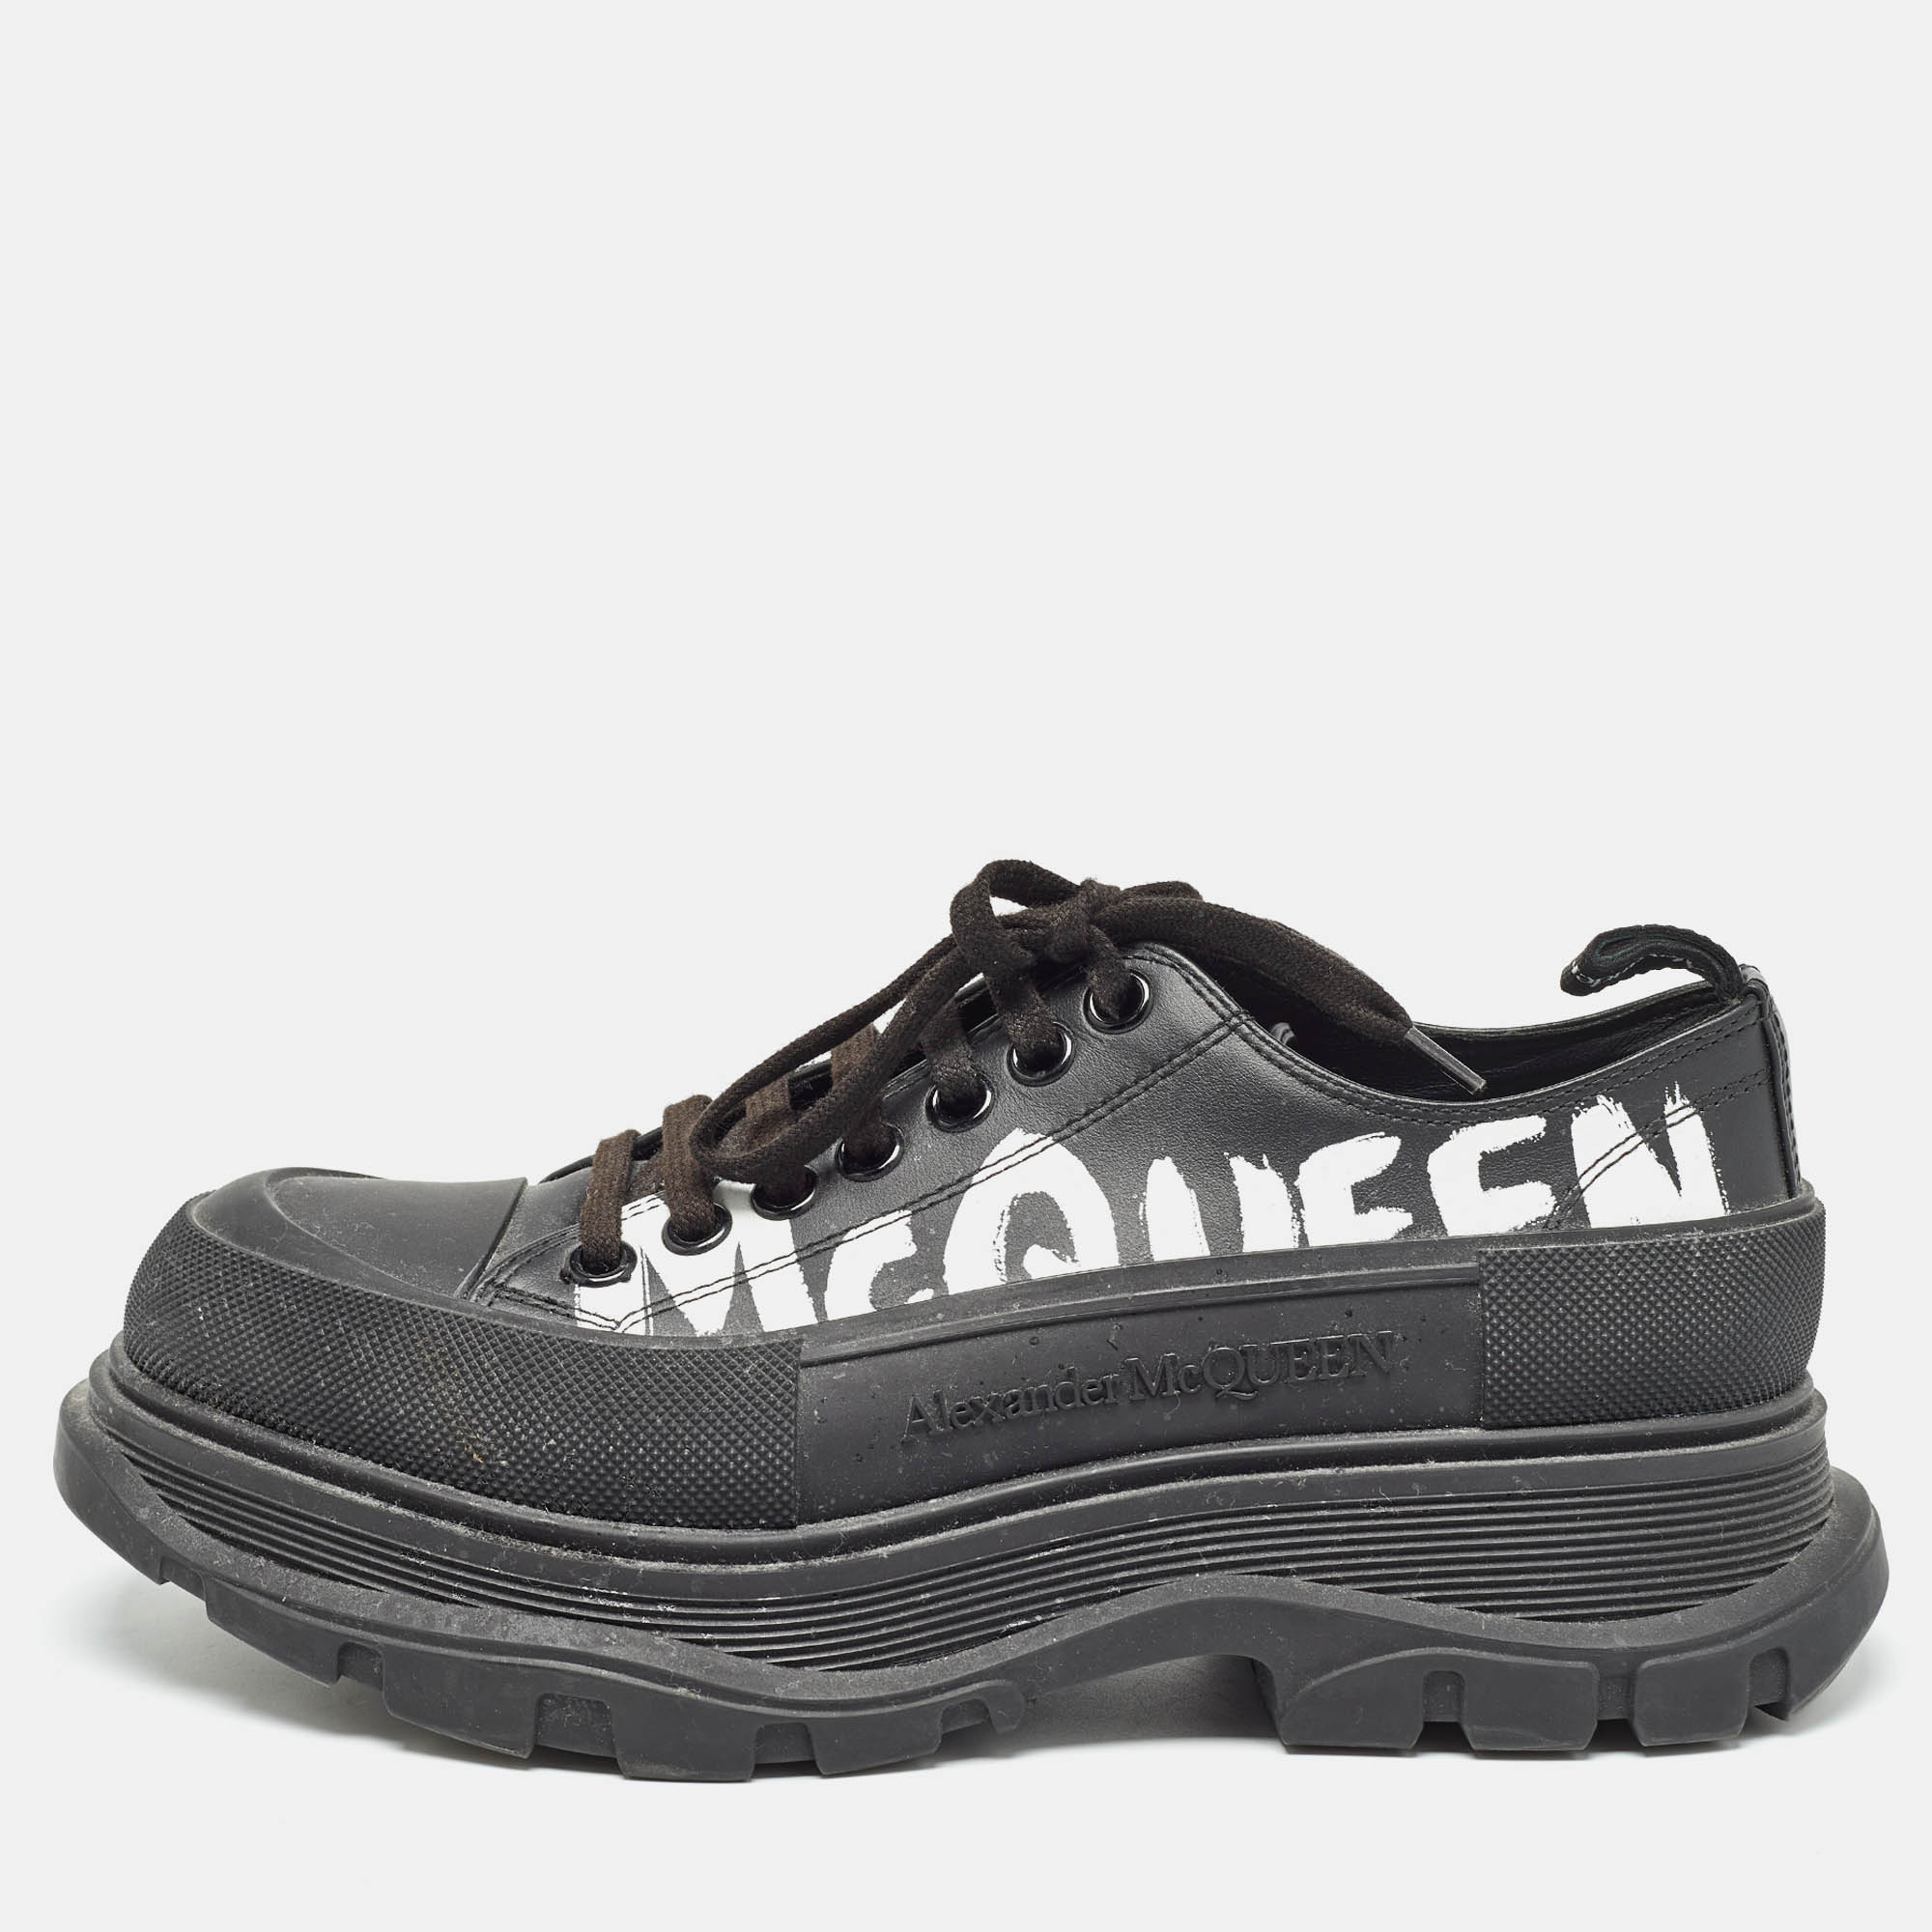 

Alexander McQueen Black Leather Tread Slick Sneakers Size